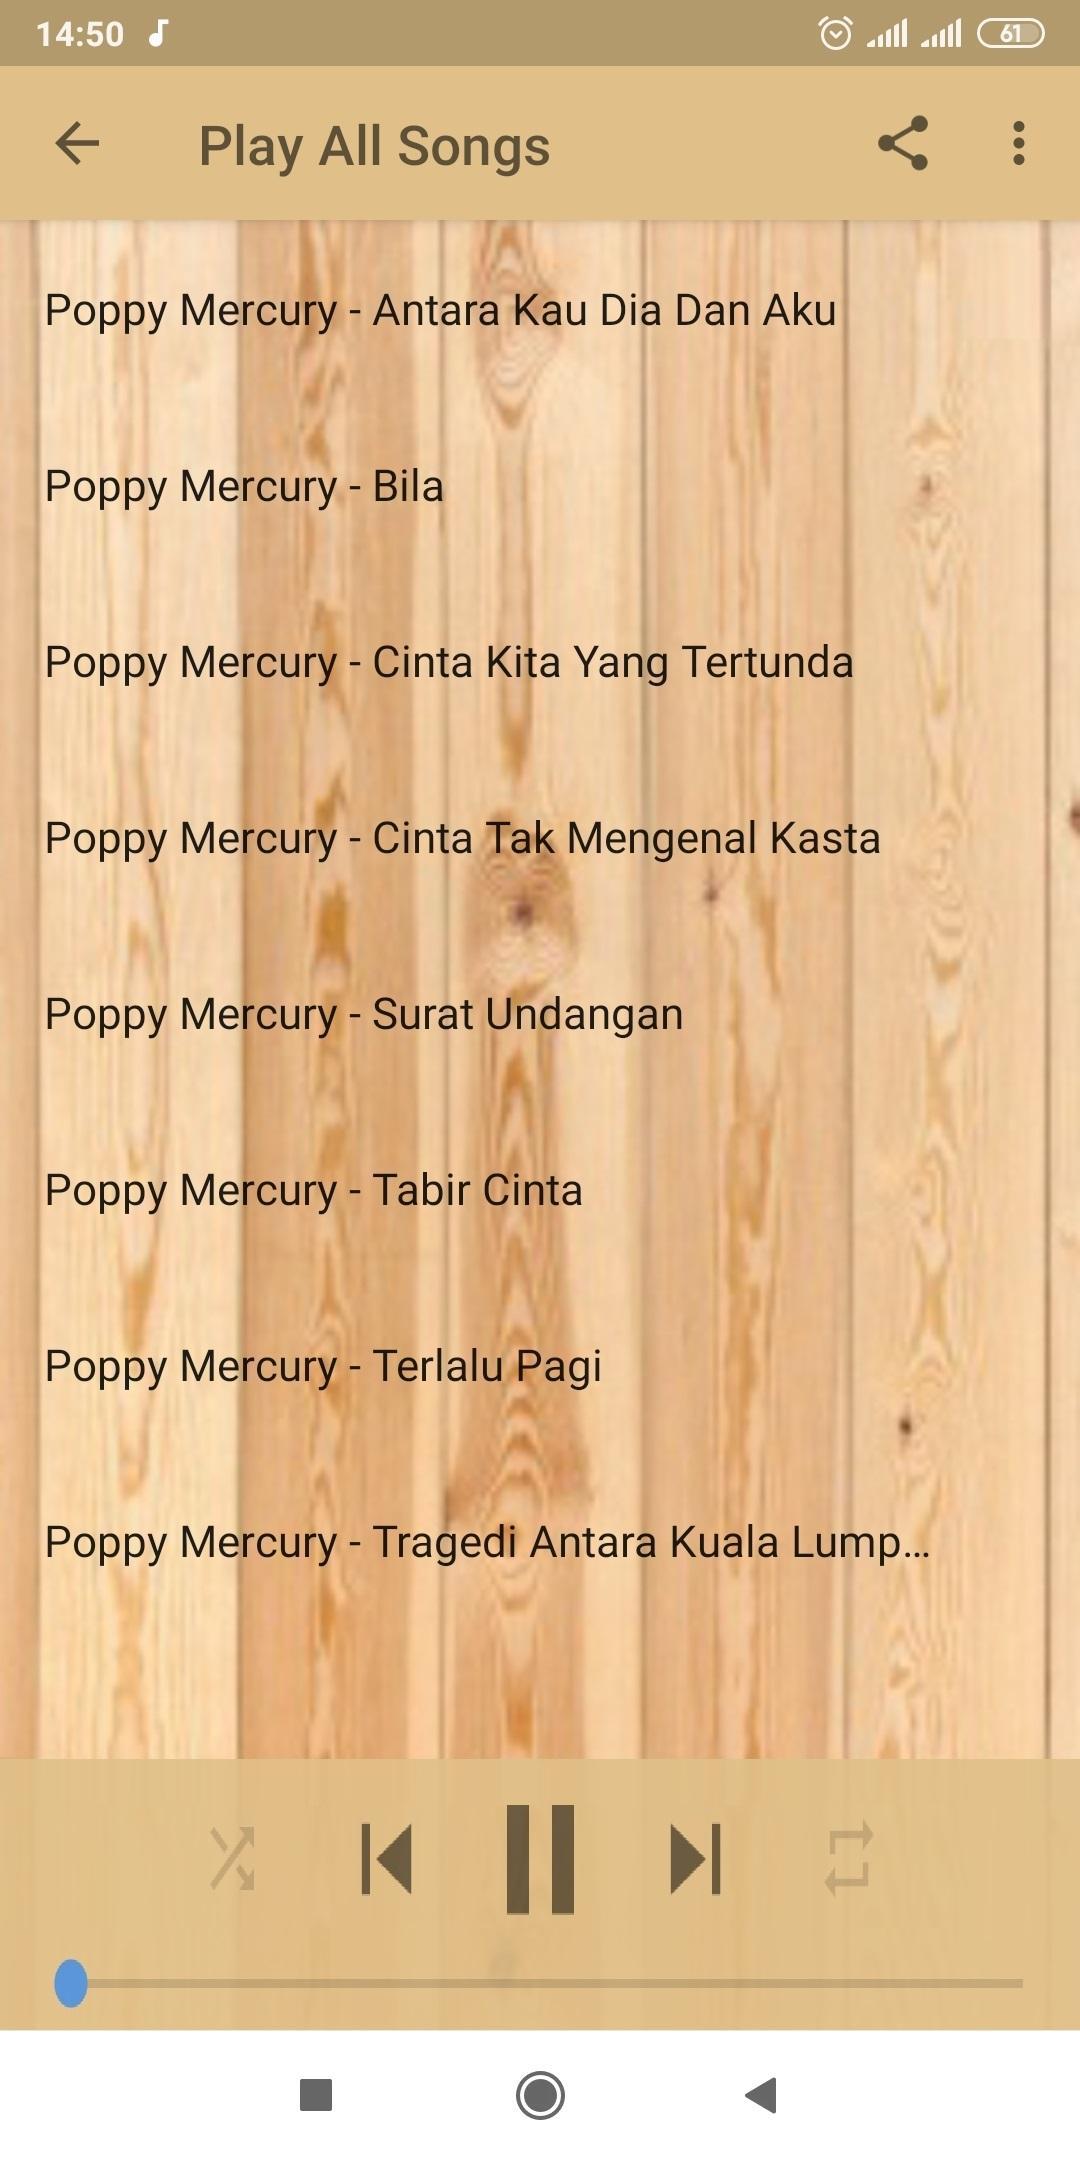 Lagu Poppy Mercury Surat Undangan Offline Mp3 For Android Apk Download